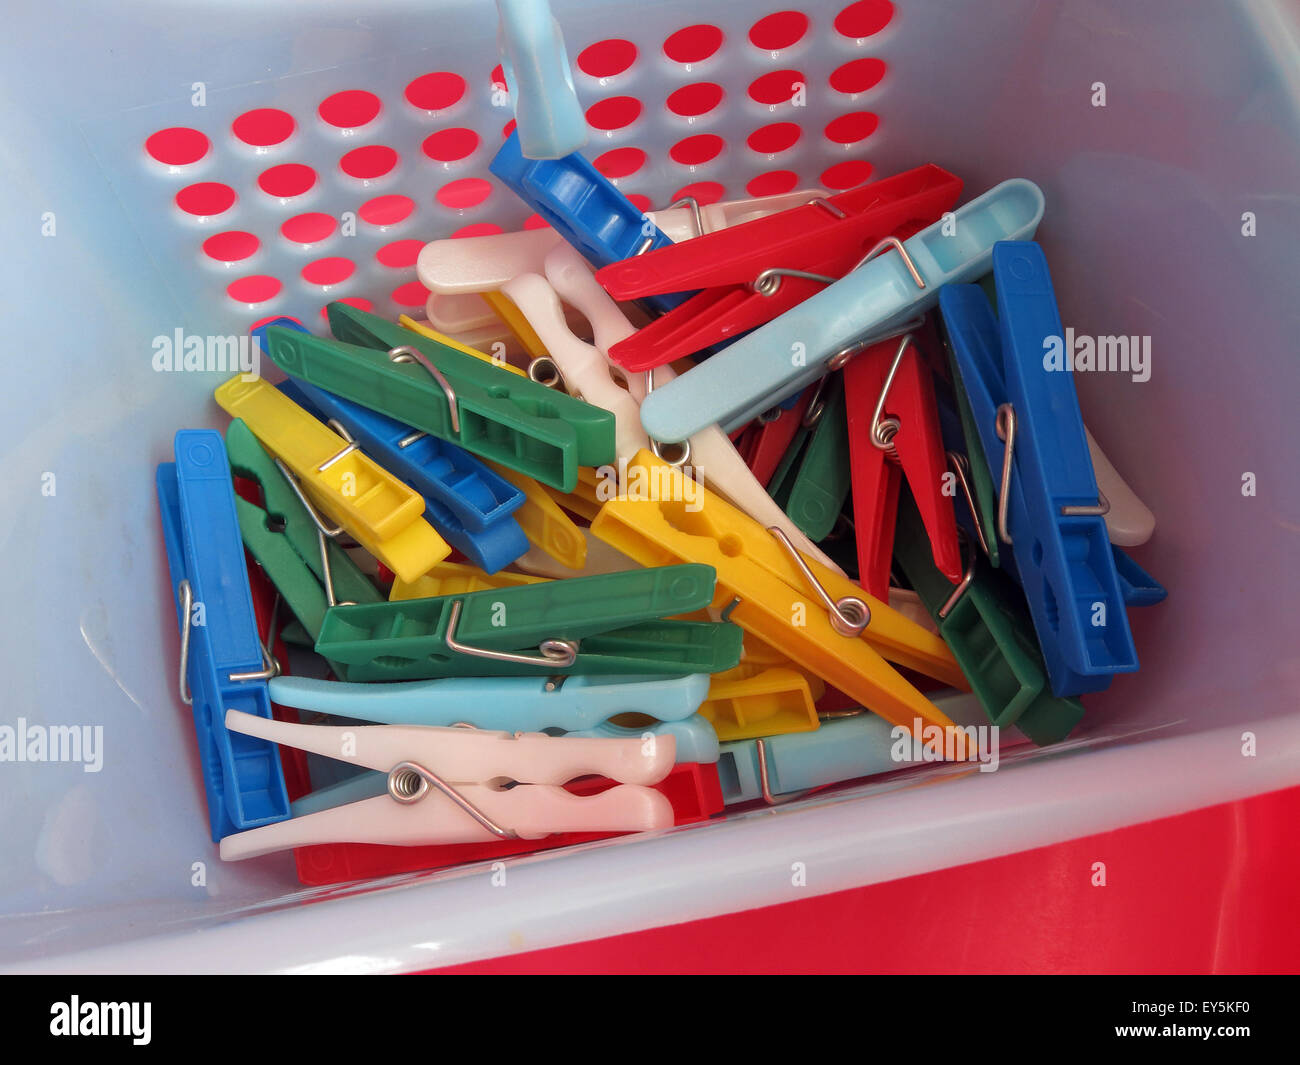 Brillante ropa Washday clavijas para lavar la tubería, en rojo, azul, amarillo, verde carrito Foto de stock